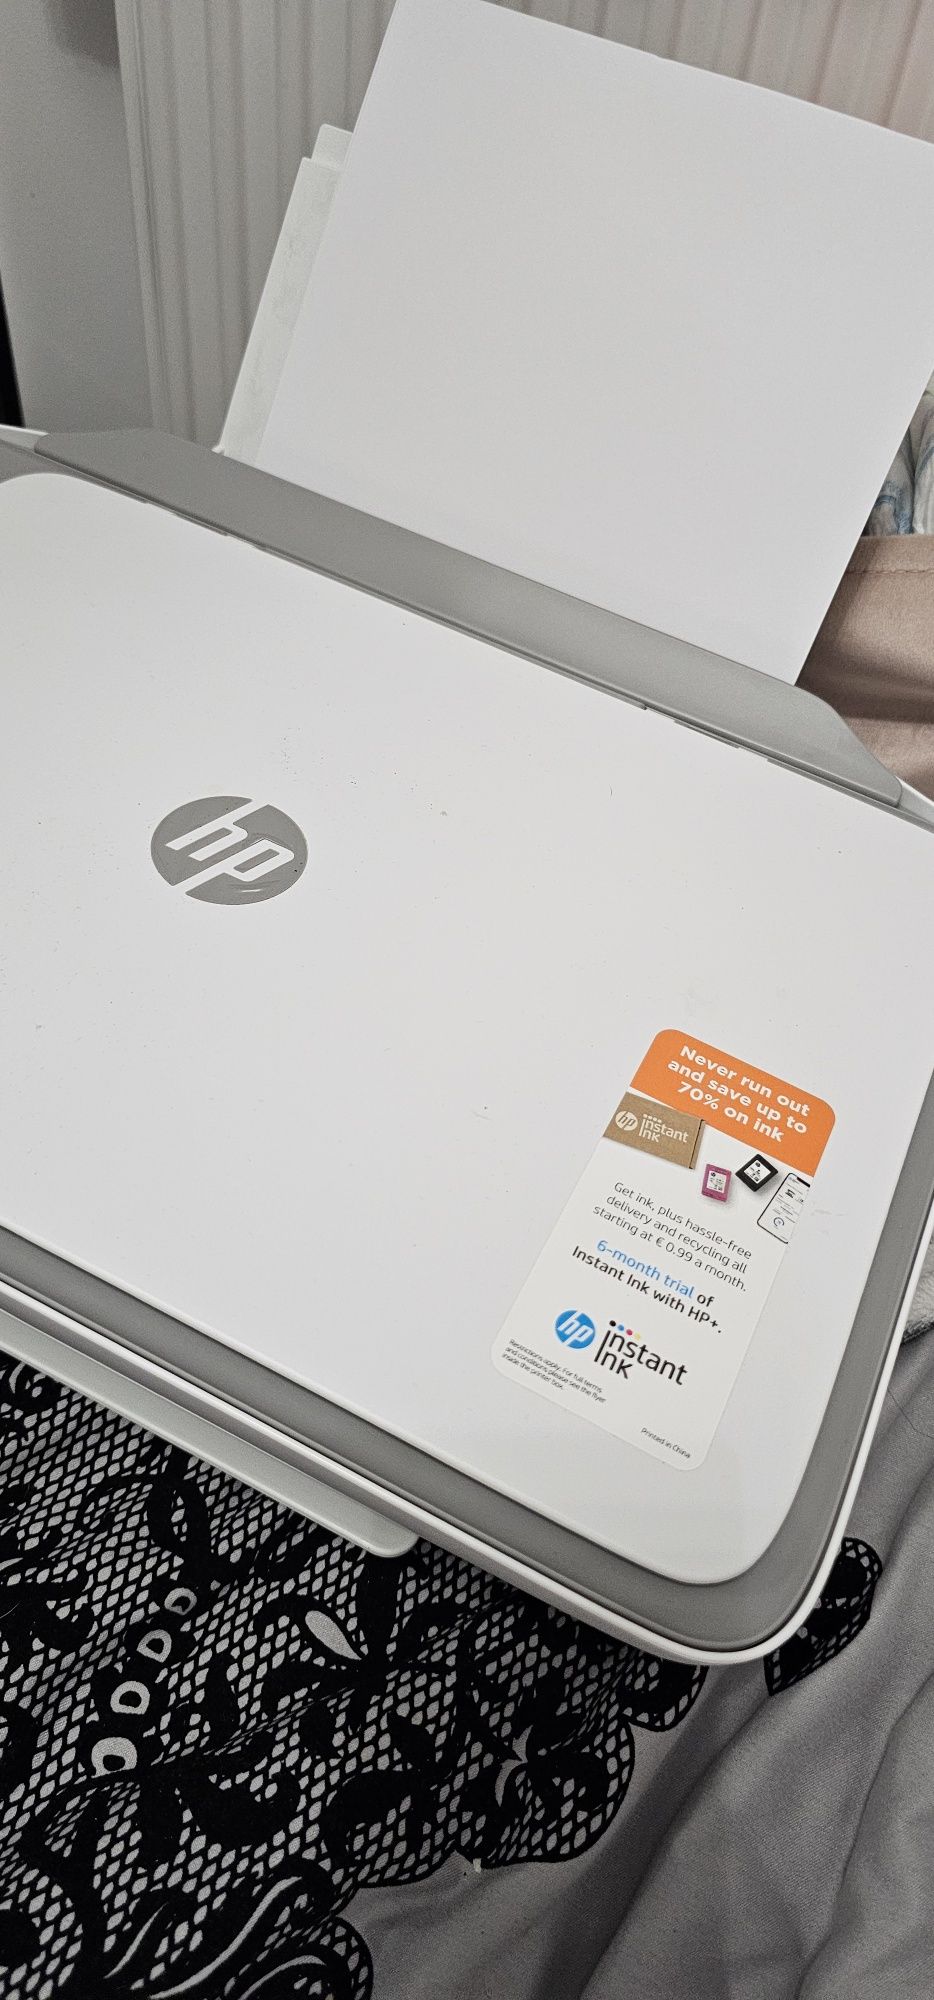 Drukarka HP deskjest 2720e wifi urządzenie wielofunkcyjne skaner kopia